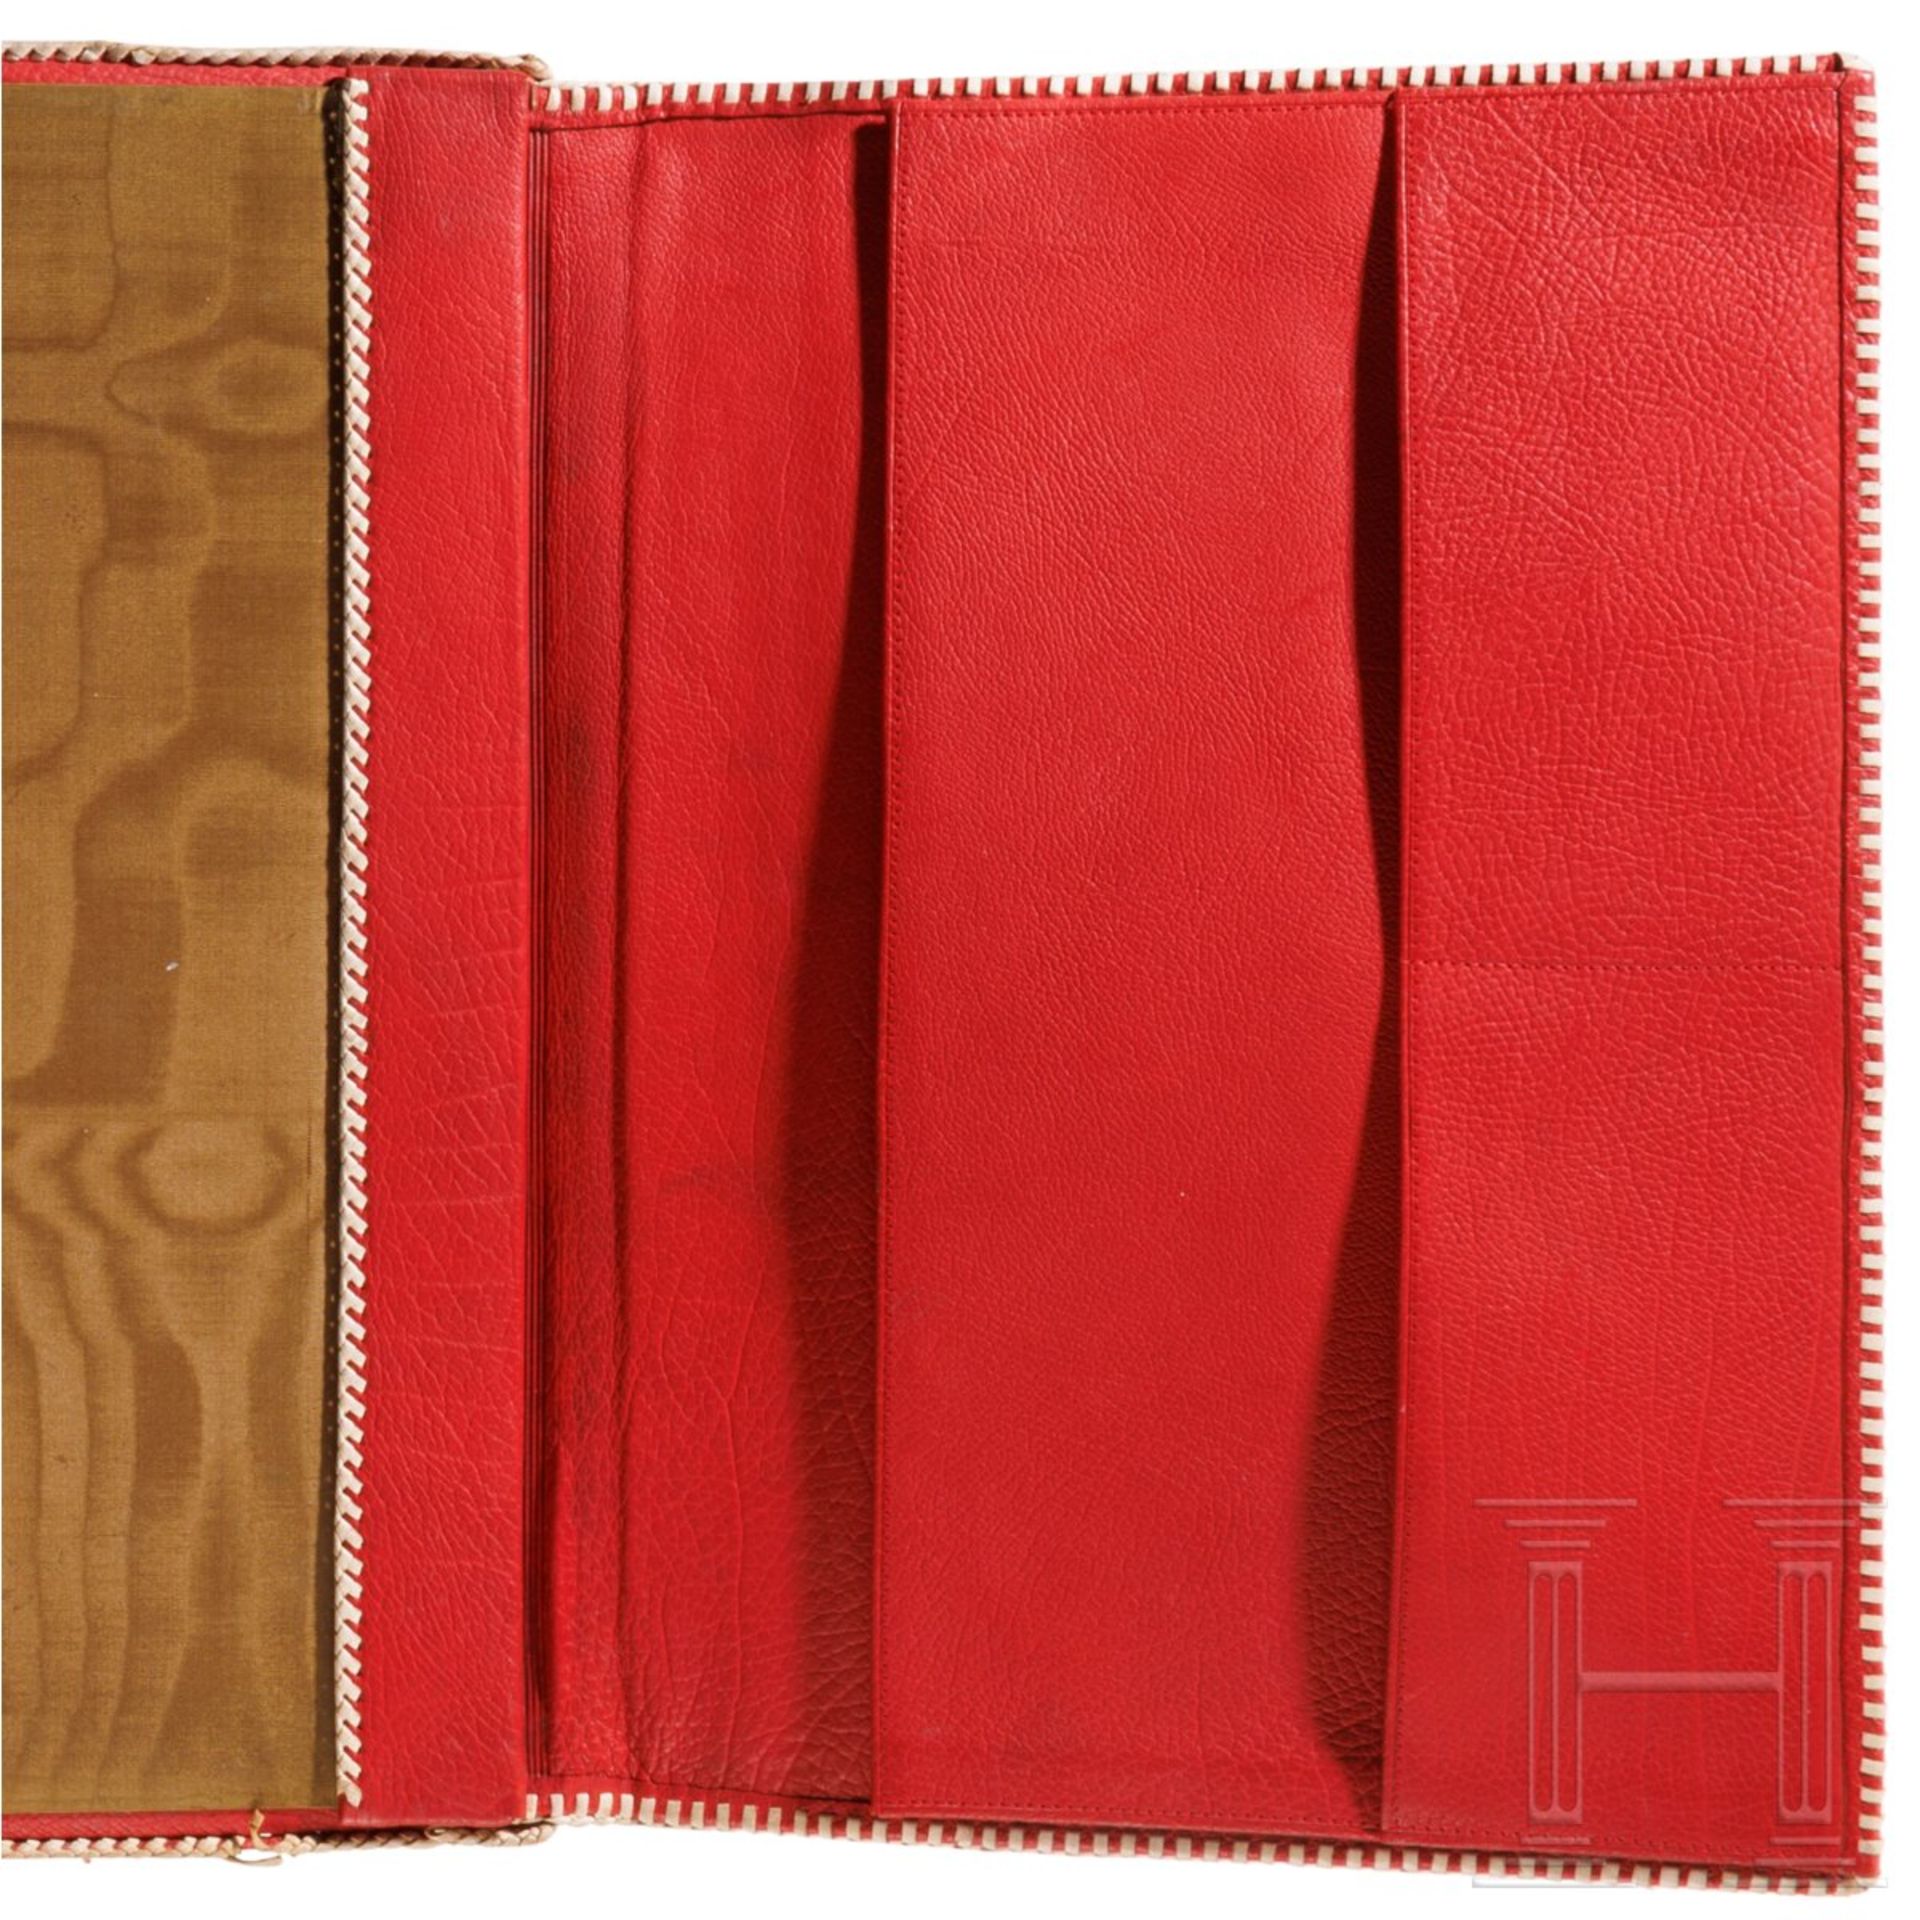 Emmy Göring - rote Maroquinledermappe mit geflochtener weißer Ledereinfassung - Bild 3 aus 4